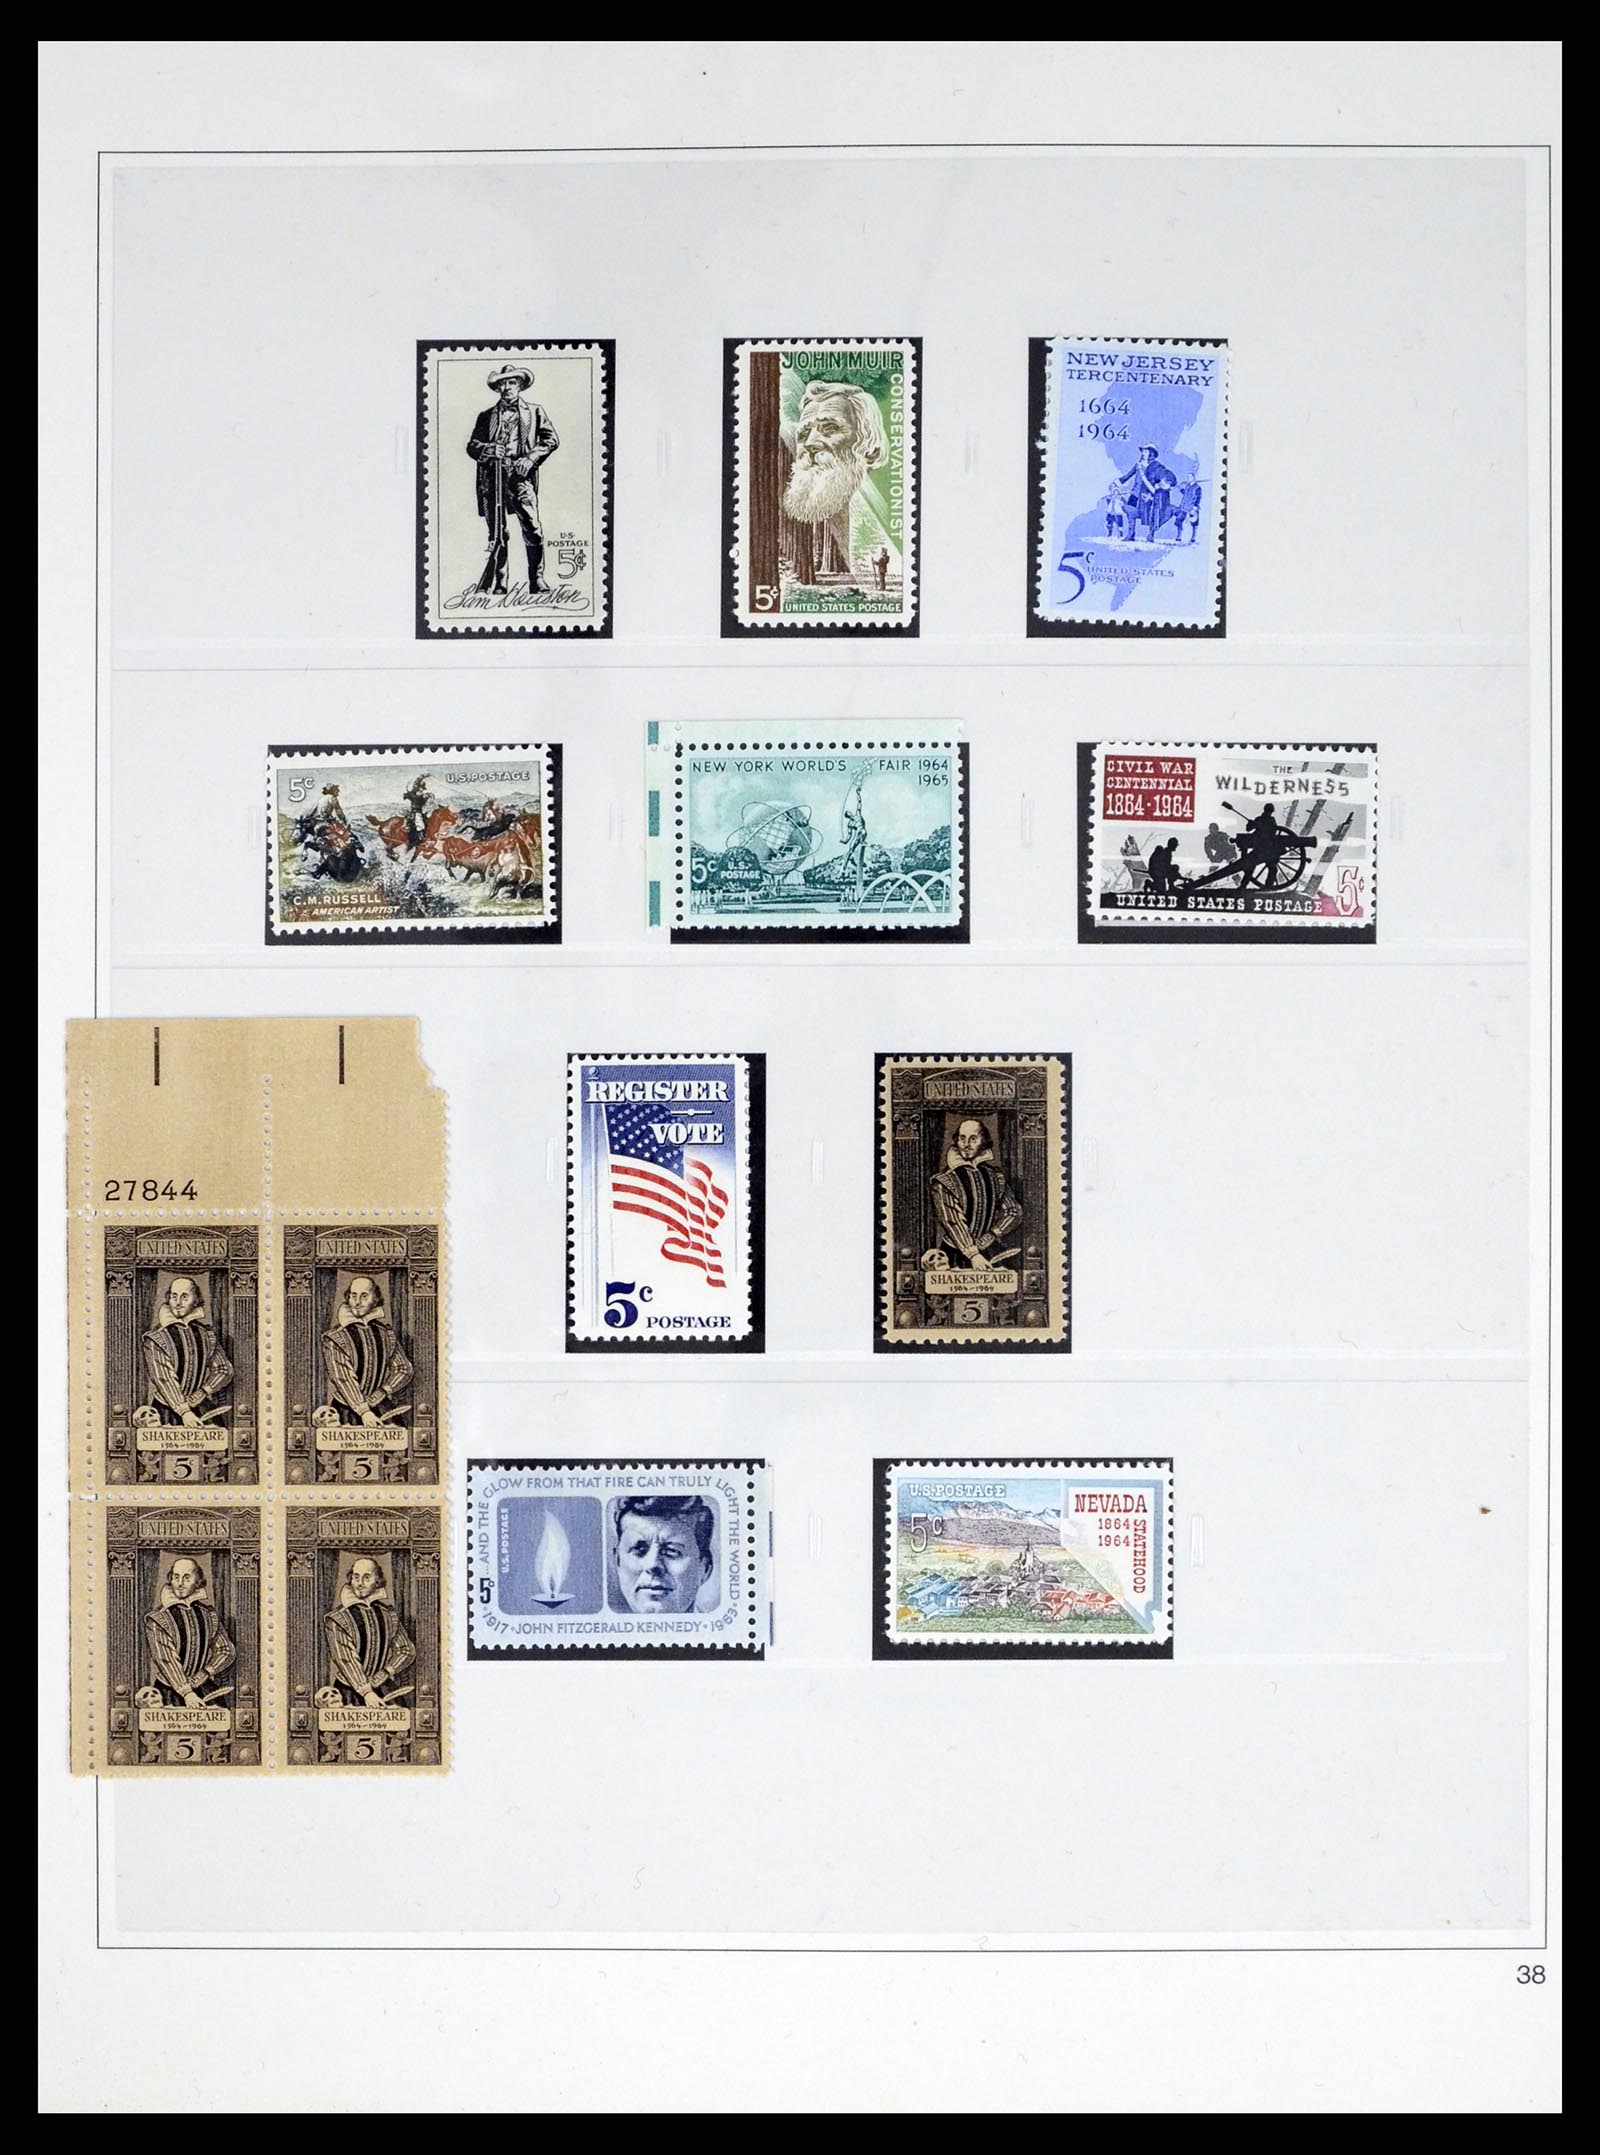 37551 081 - Stamp collection 37551 USA 1851-2001.